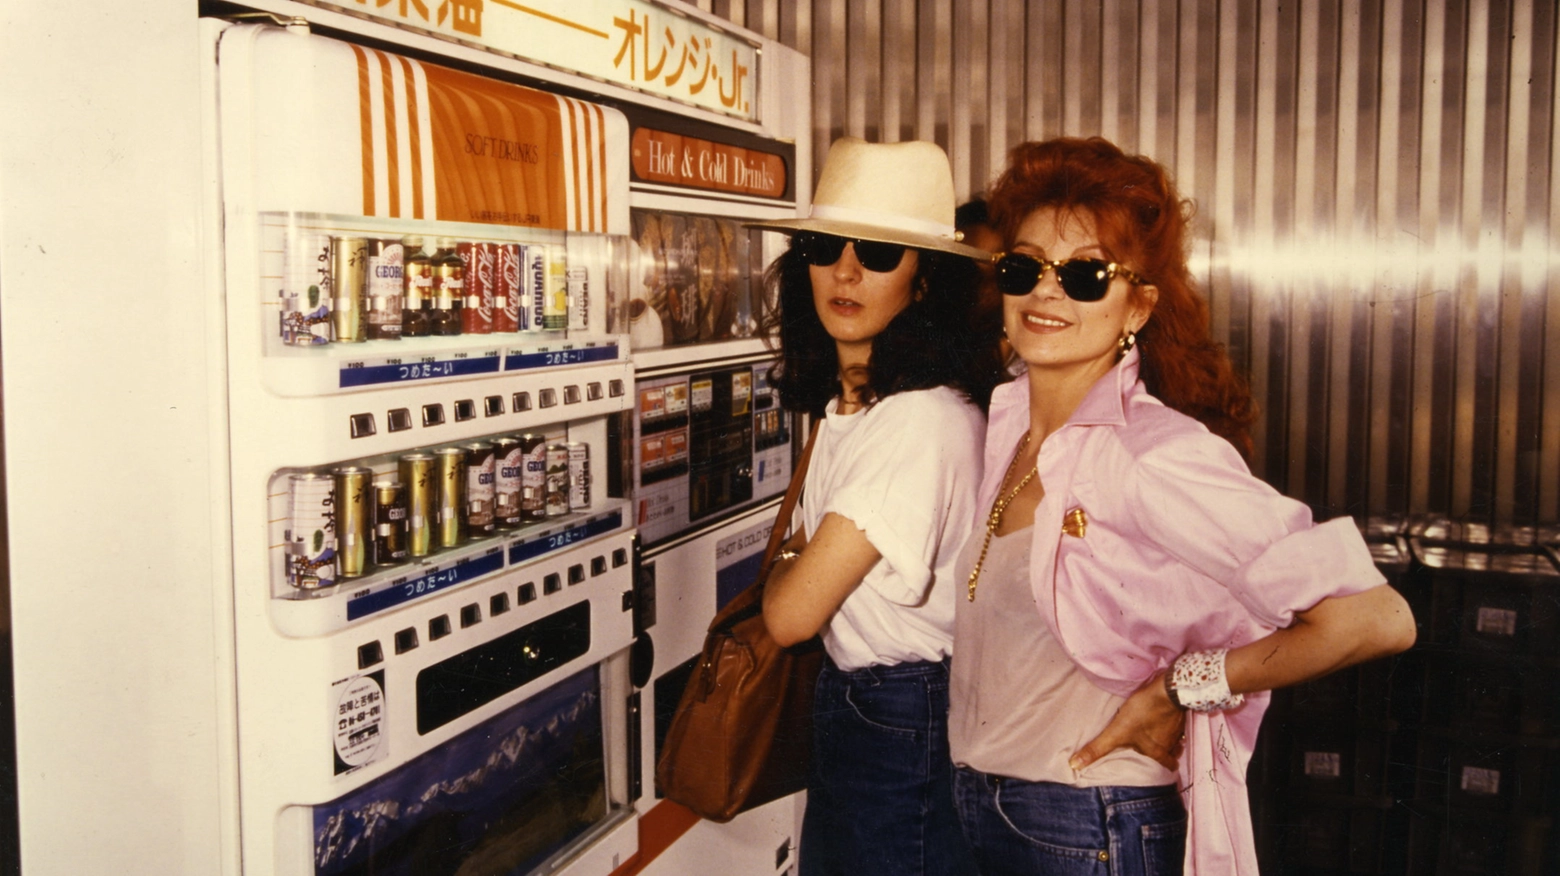 Un'immagine di Milva con la figlia datata 1986